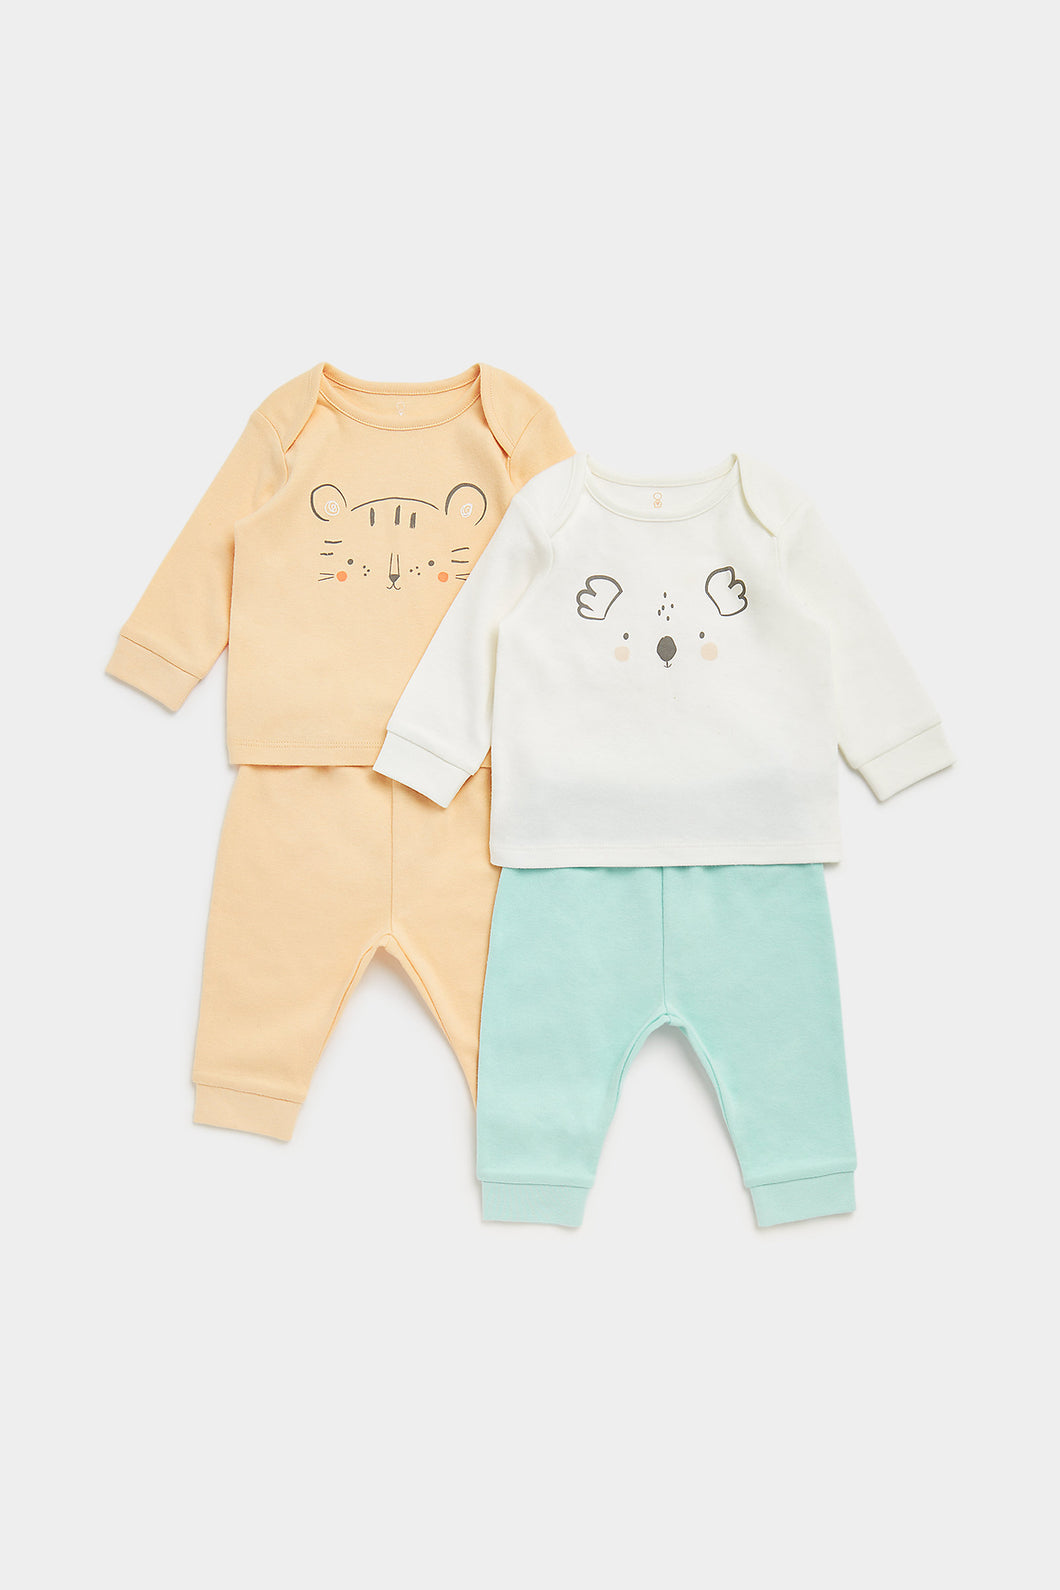 Mothercare Fun Faces Baby Pyjamas - 2 Pack